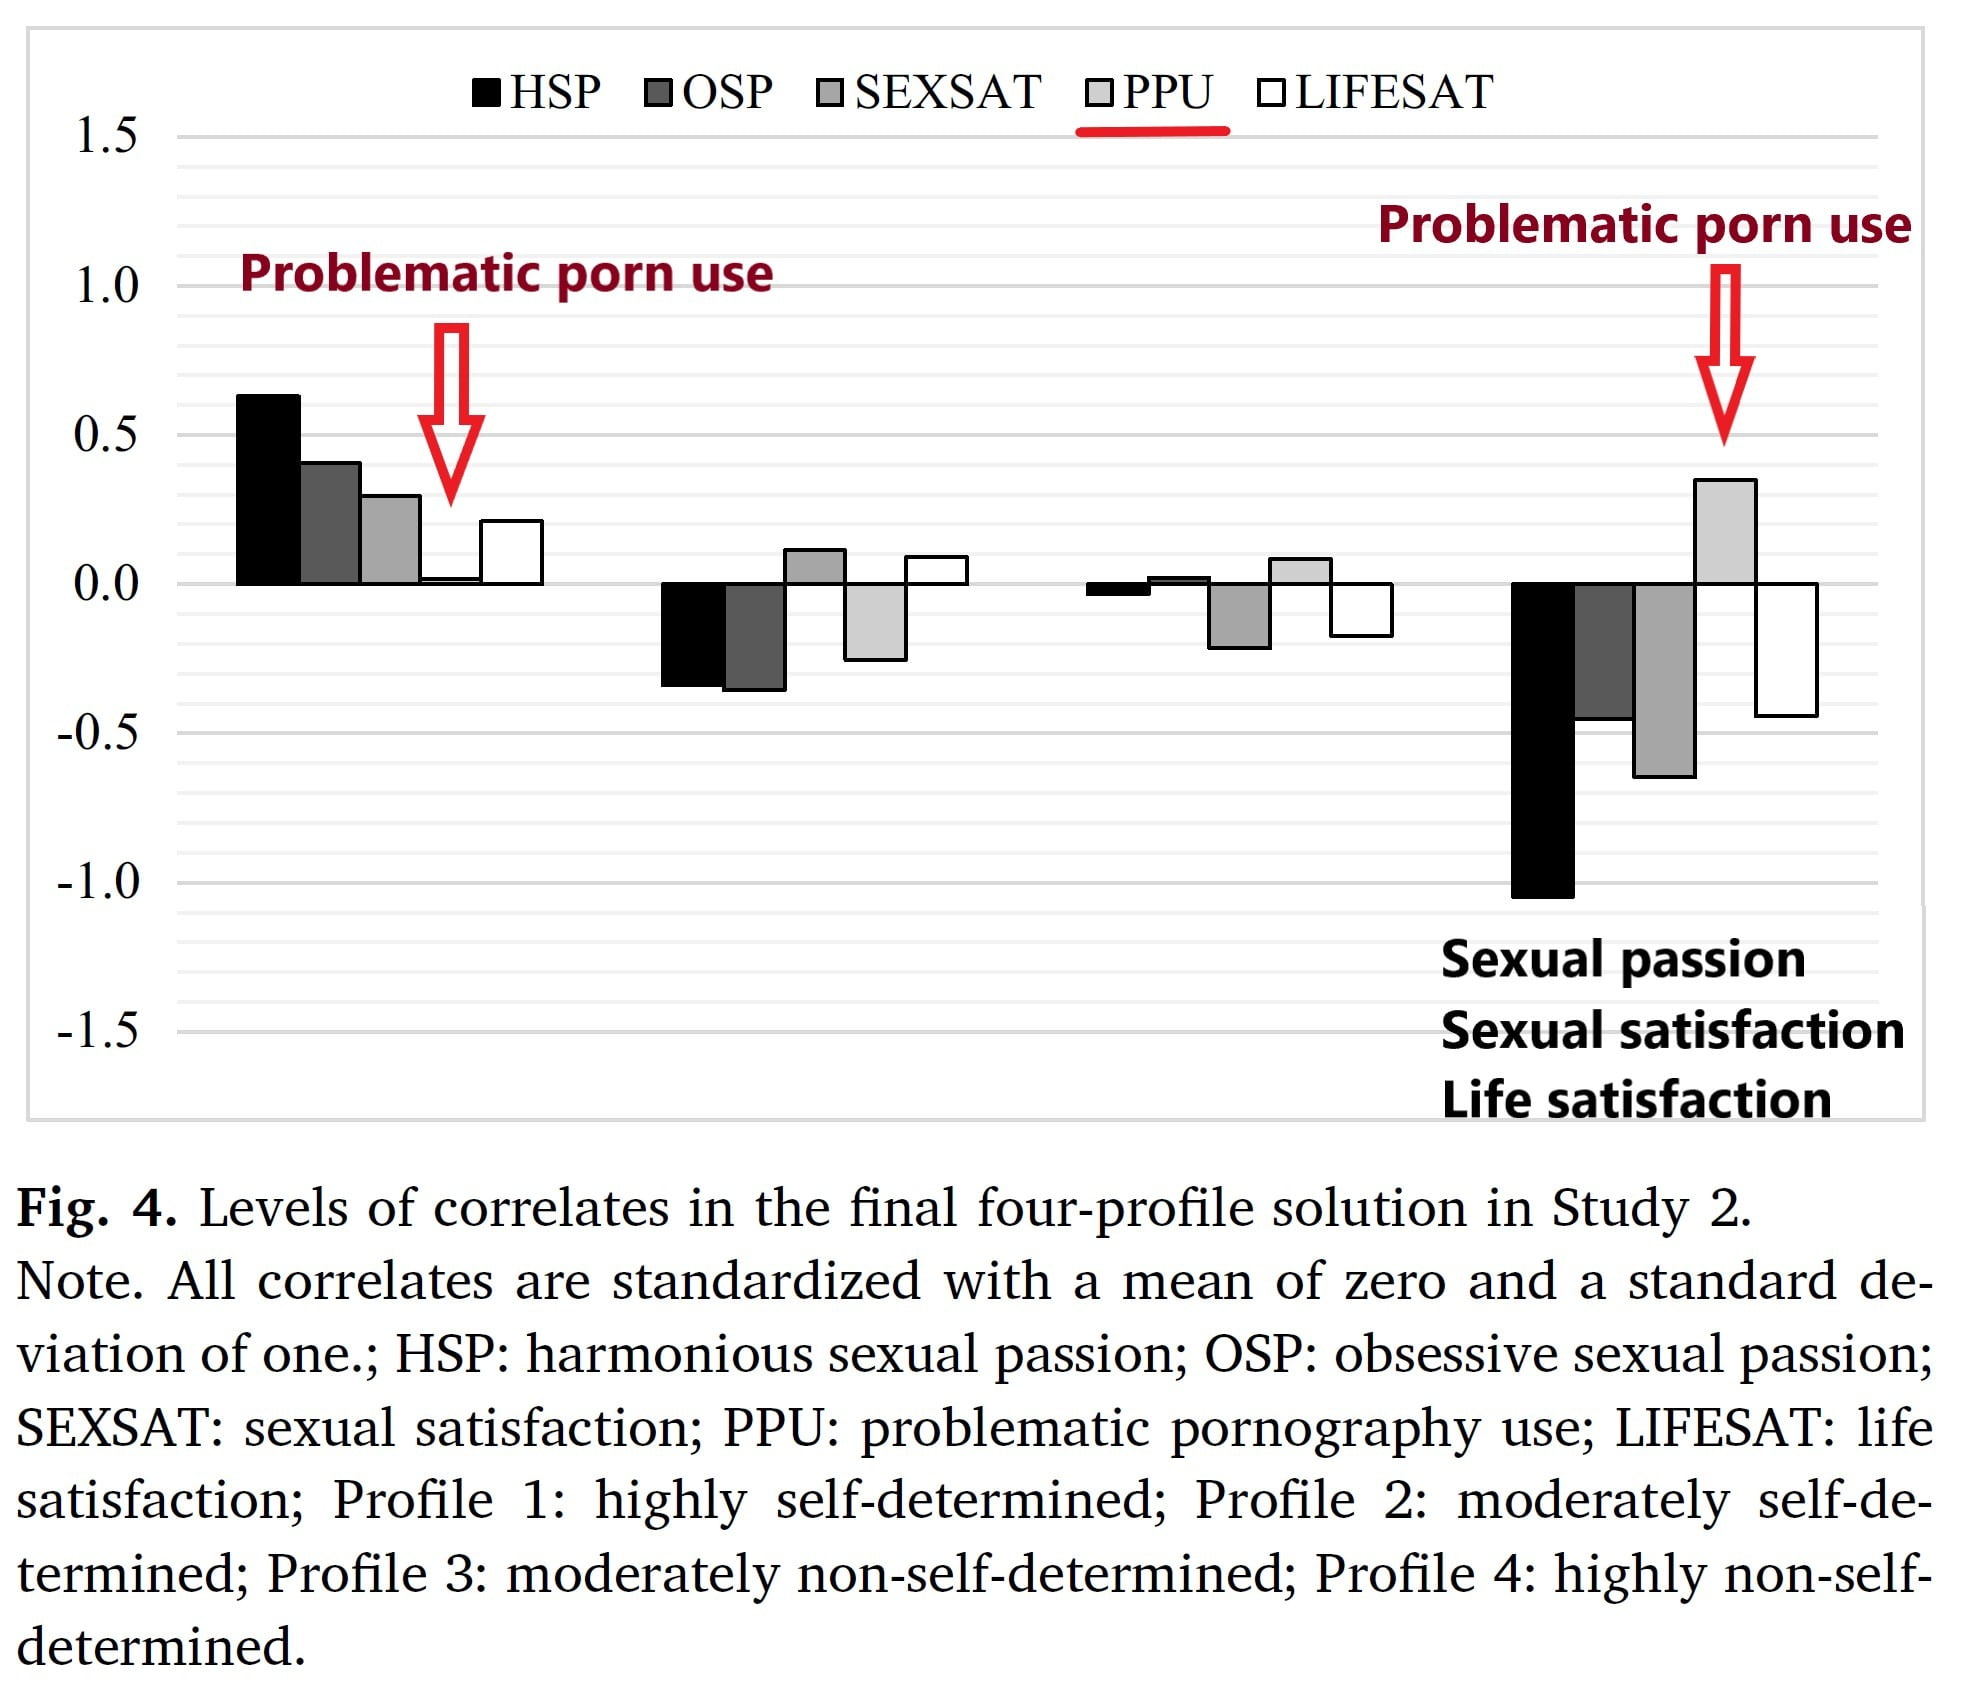 seksualinis susijaudinimas padidino erekciją kodėl stori vyrai turi mažą varpą